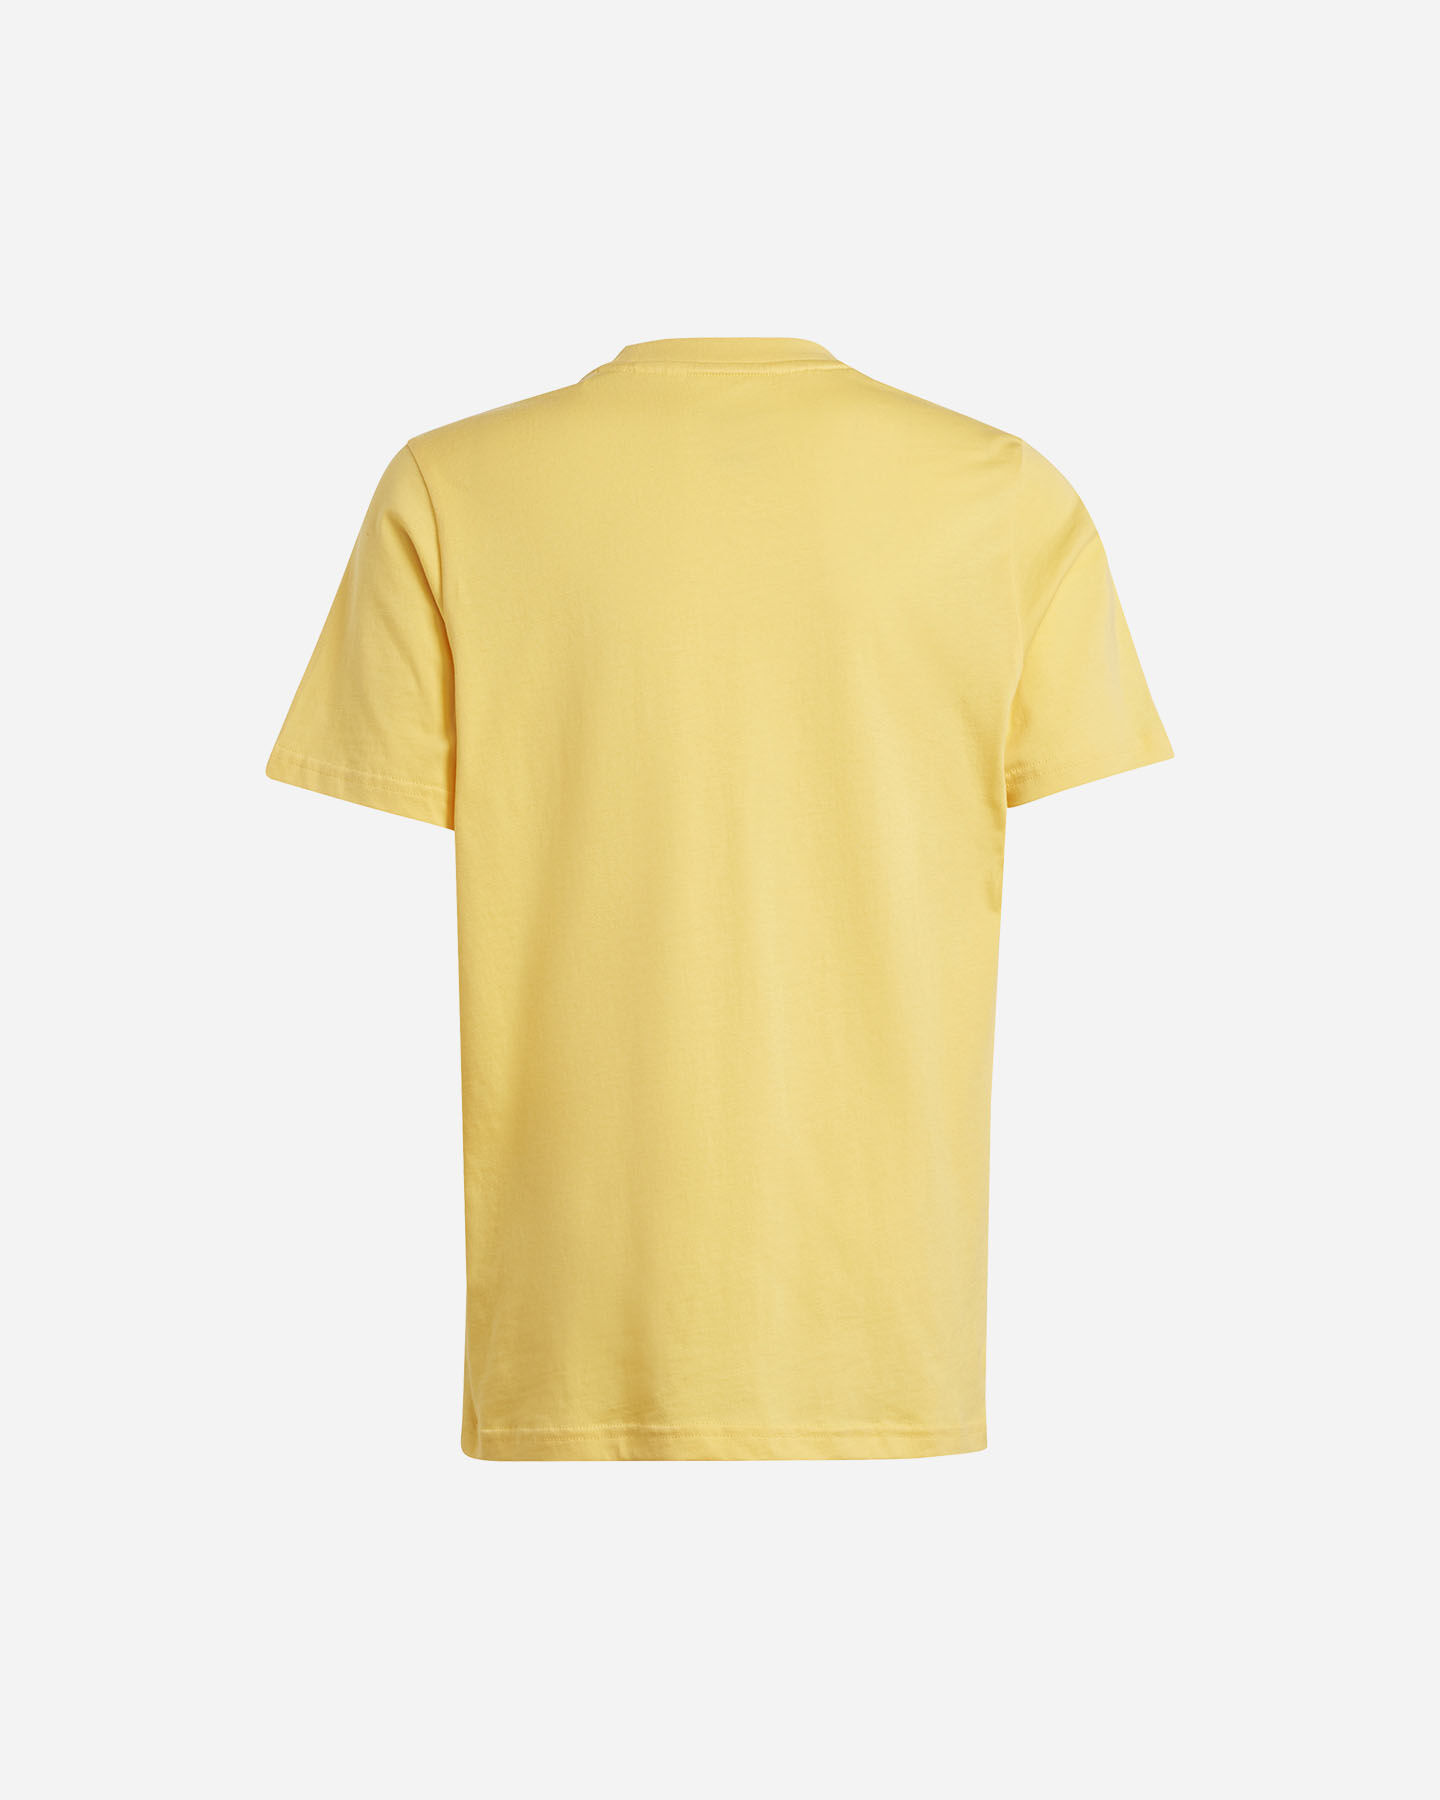  T-Shirt ADIDAS BOY BIG LOGO JR S5656415|UNI|7-8A scatto 1